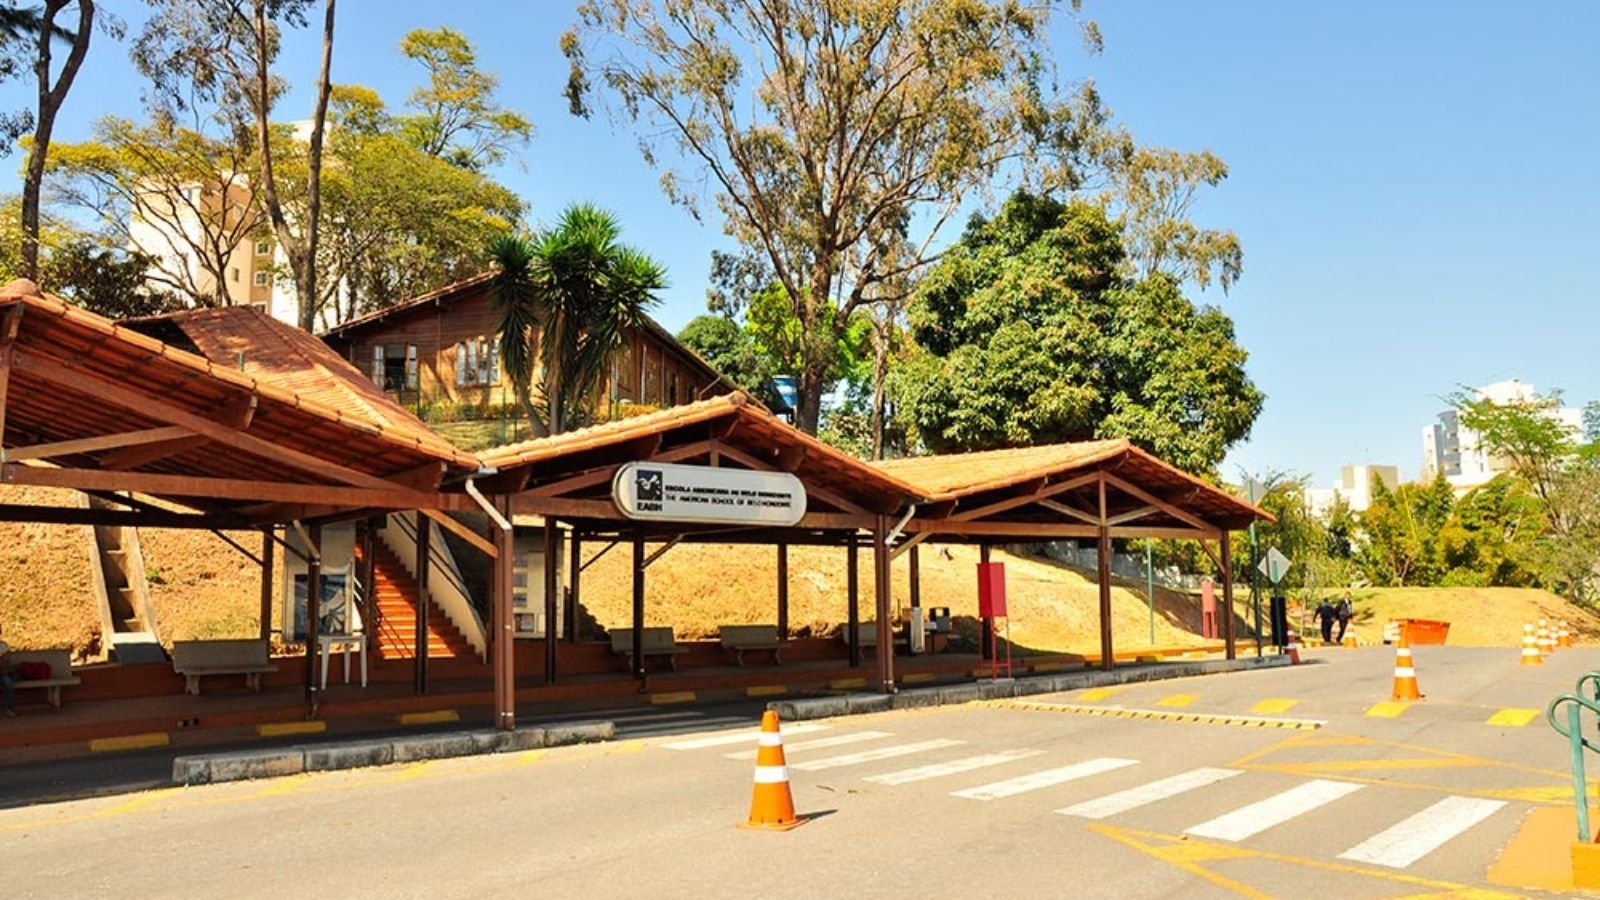 Escola Americana de Belo Horizonte (The American School of Belo Horizonte)